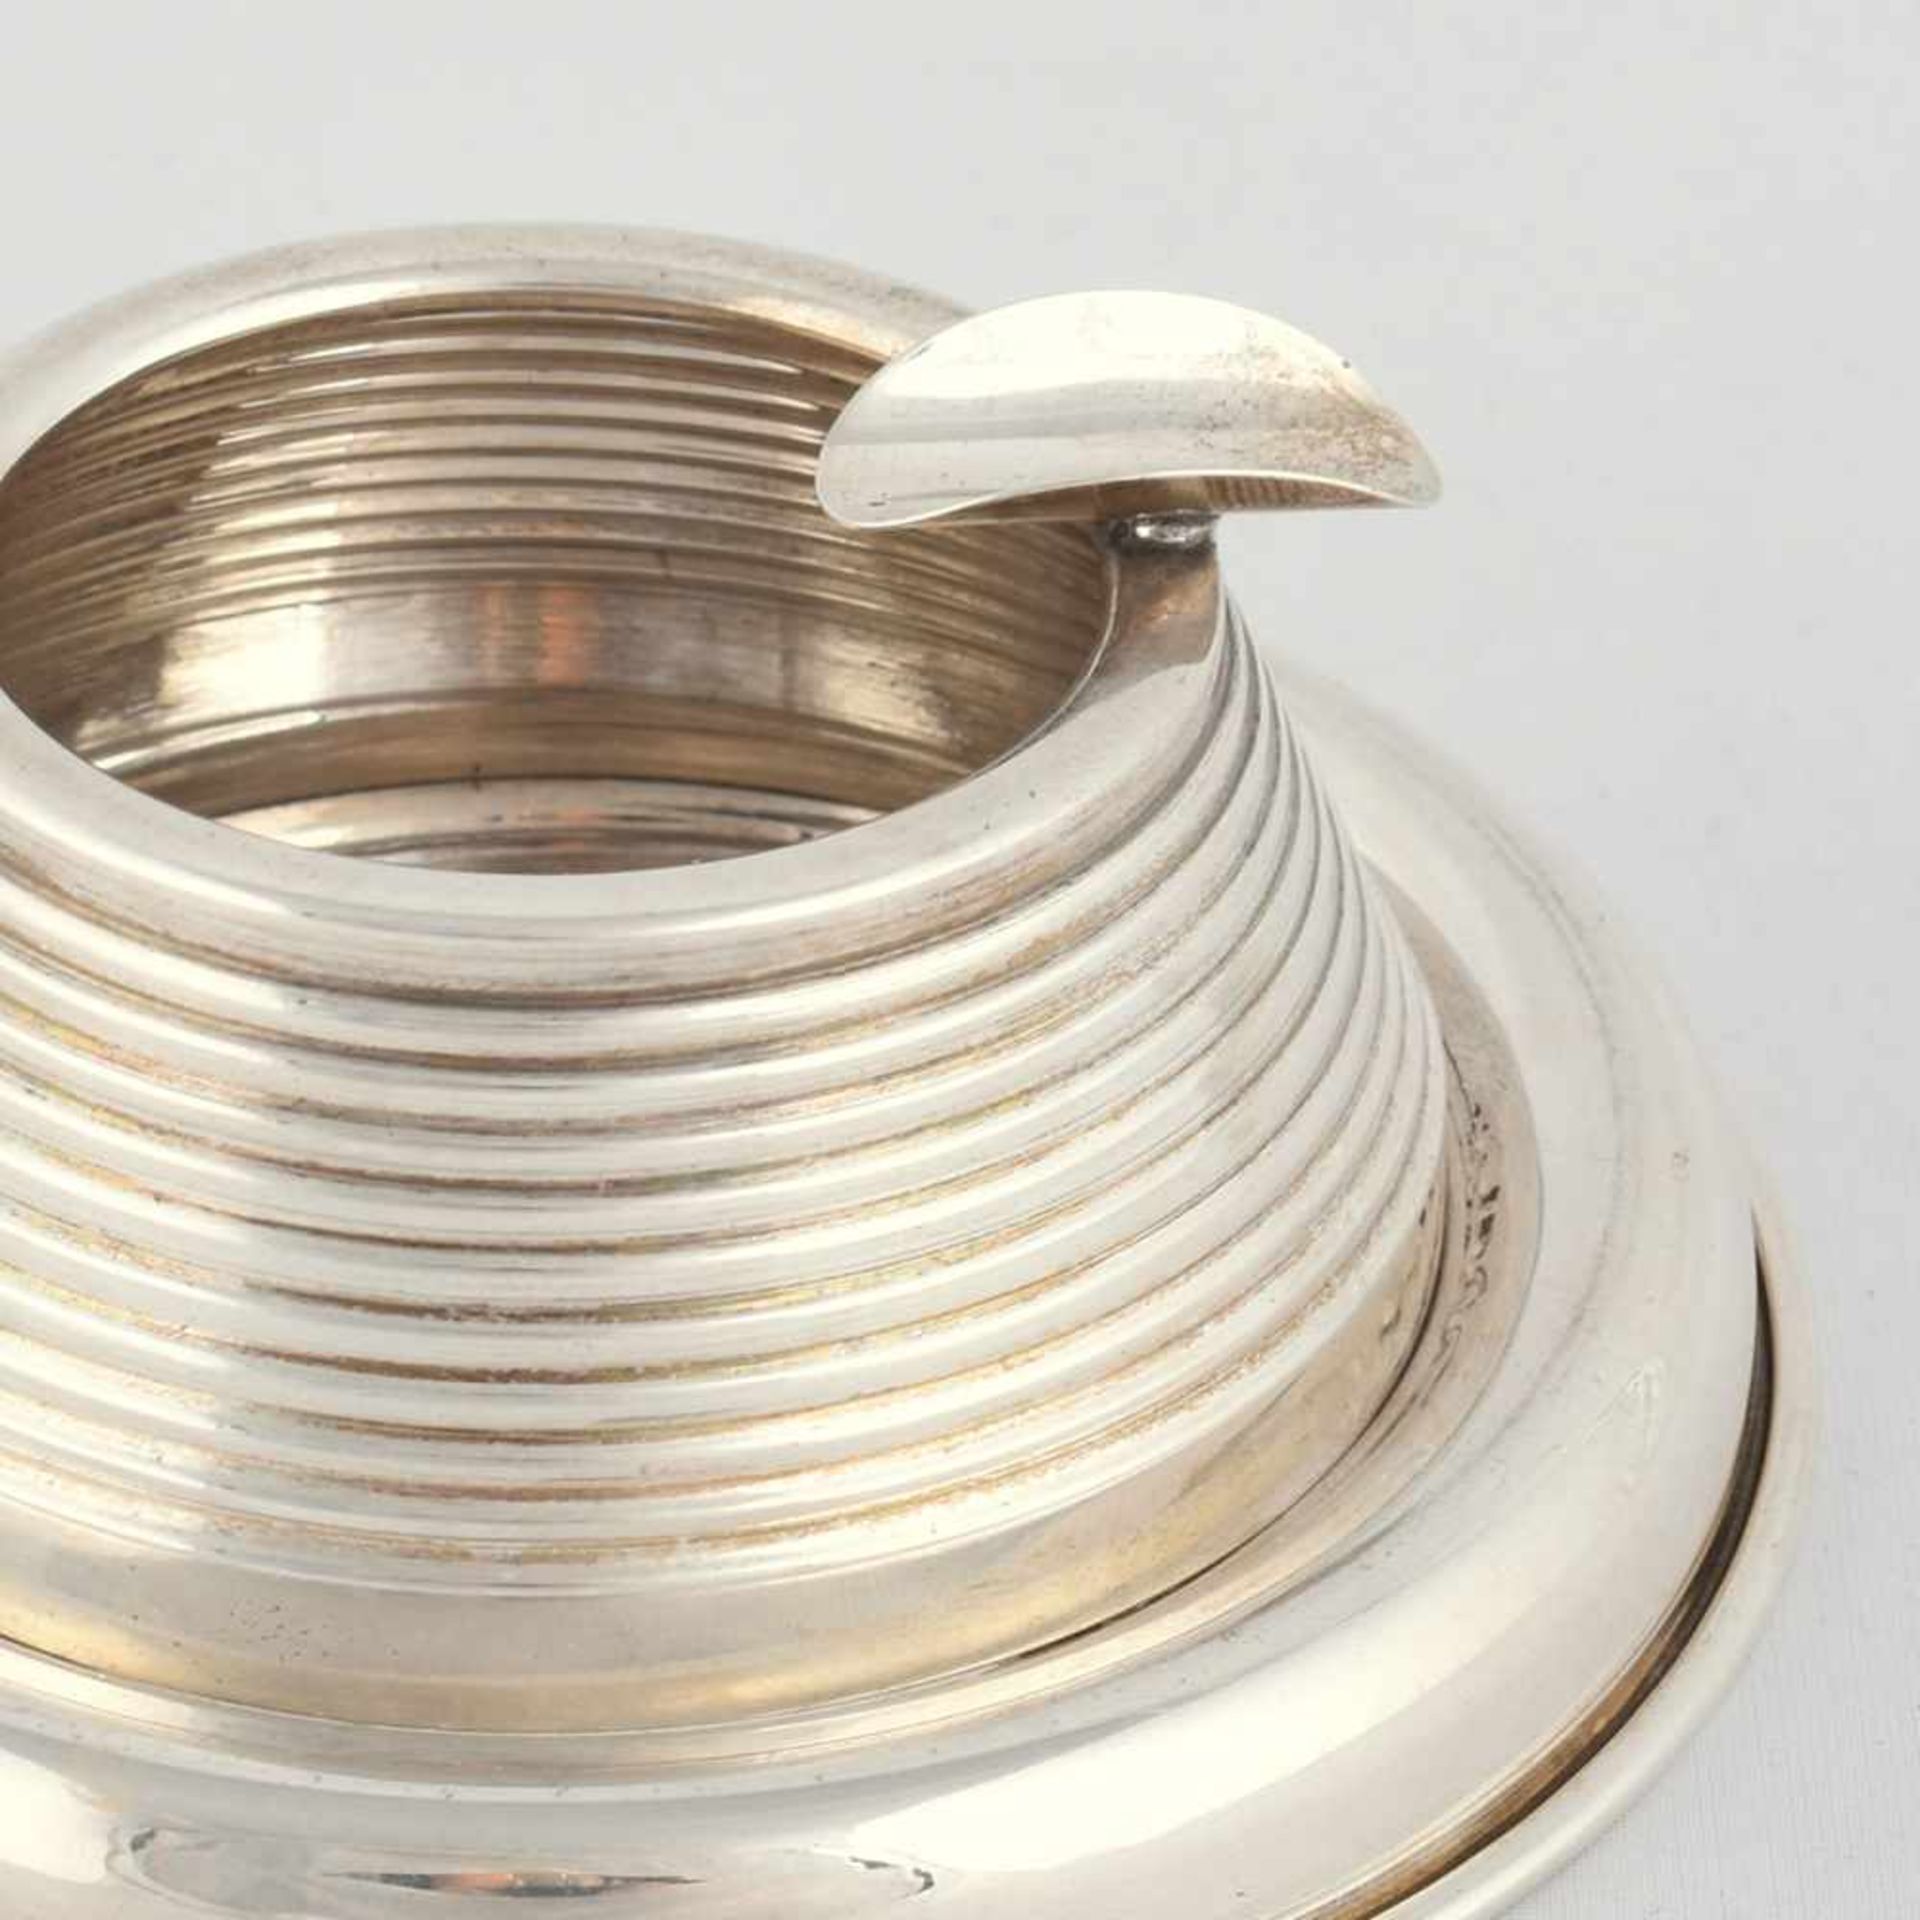 Aschenbecher Silber 900, gemarkt "Sener", runde Schale mit gebogenem Rand, darauf abnehmbare